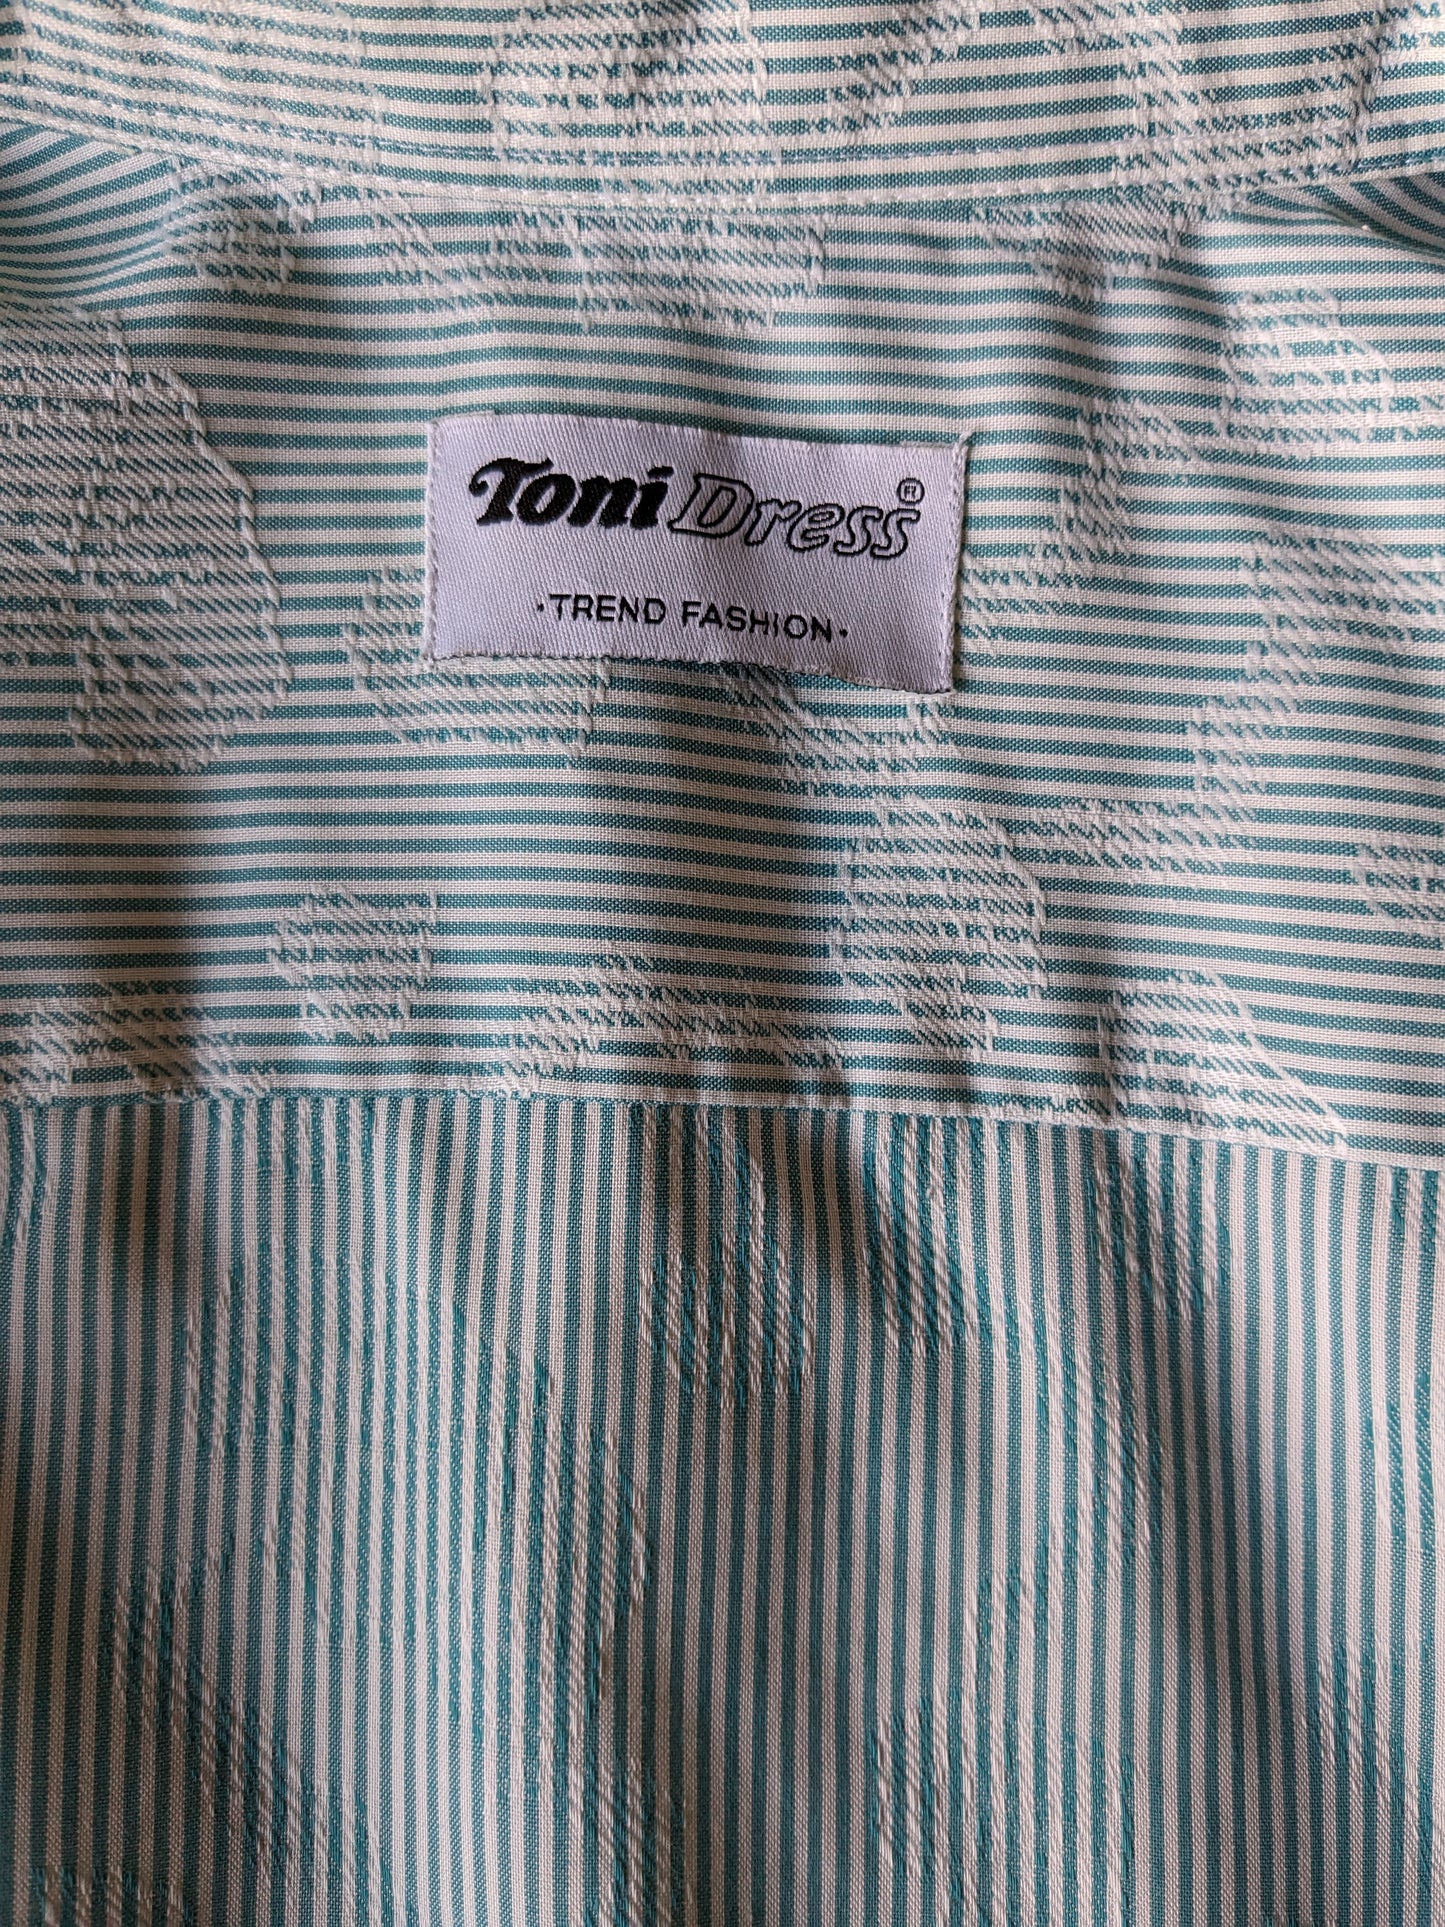 Camicia da abbigliamento Toni vintage. Strisce bianche verdi con motivo a foglia bianca. Taglia M.